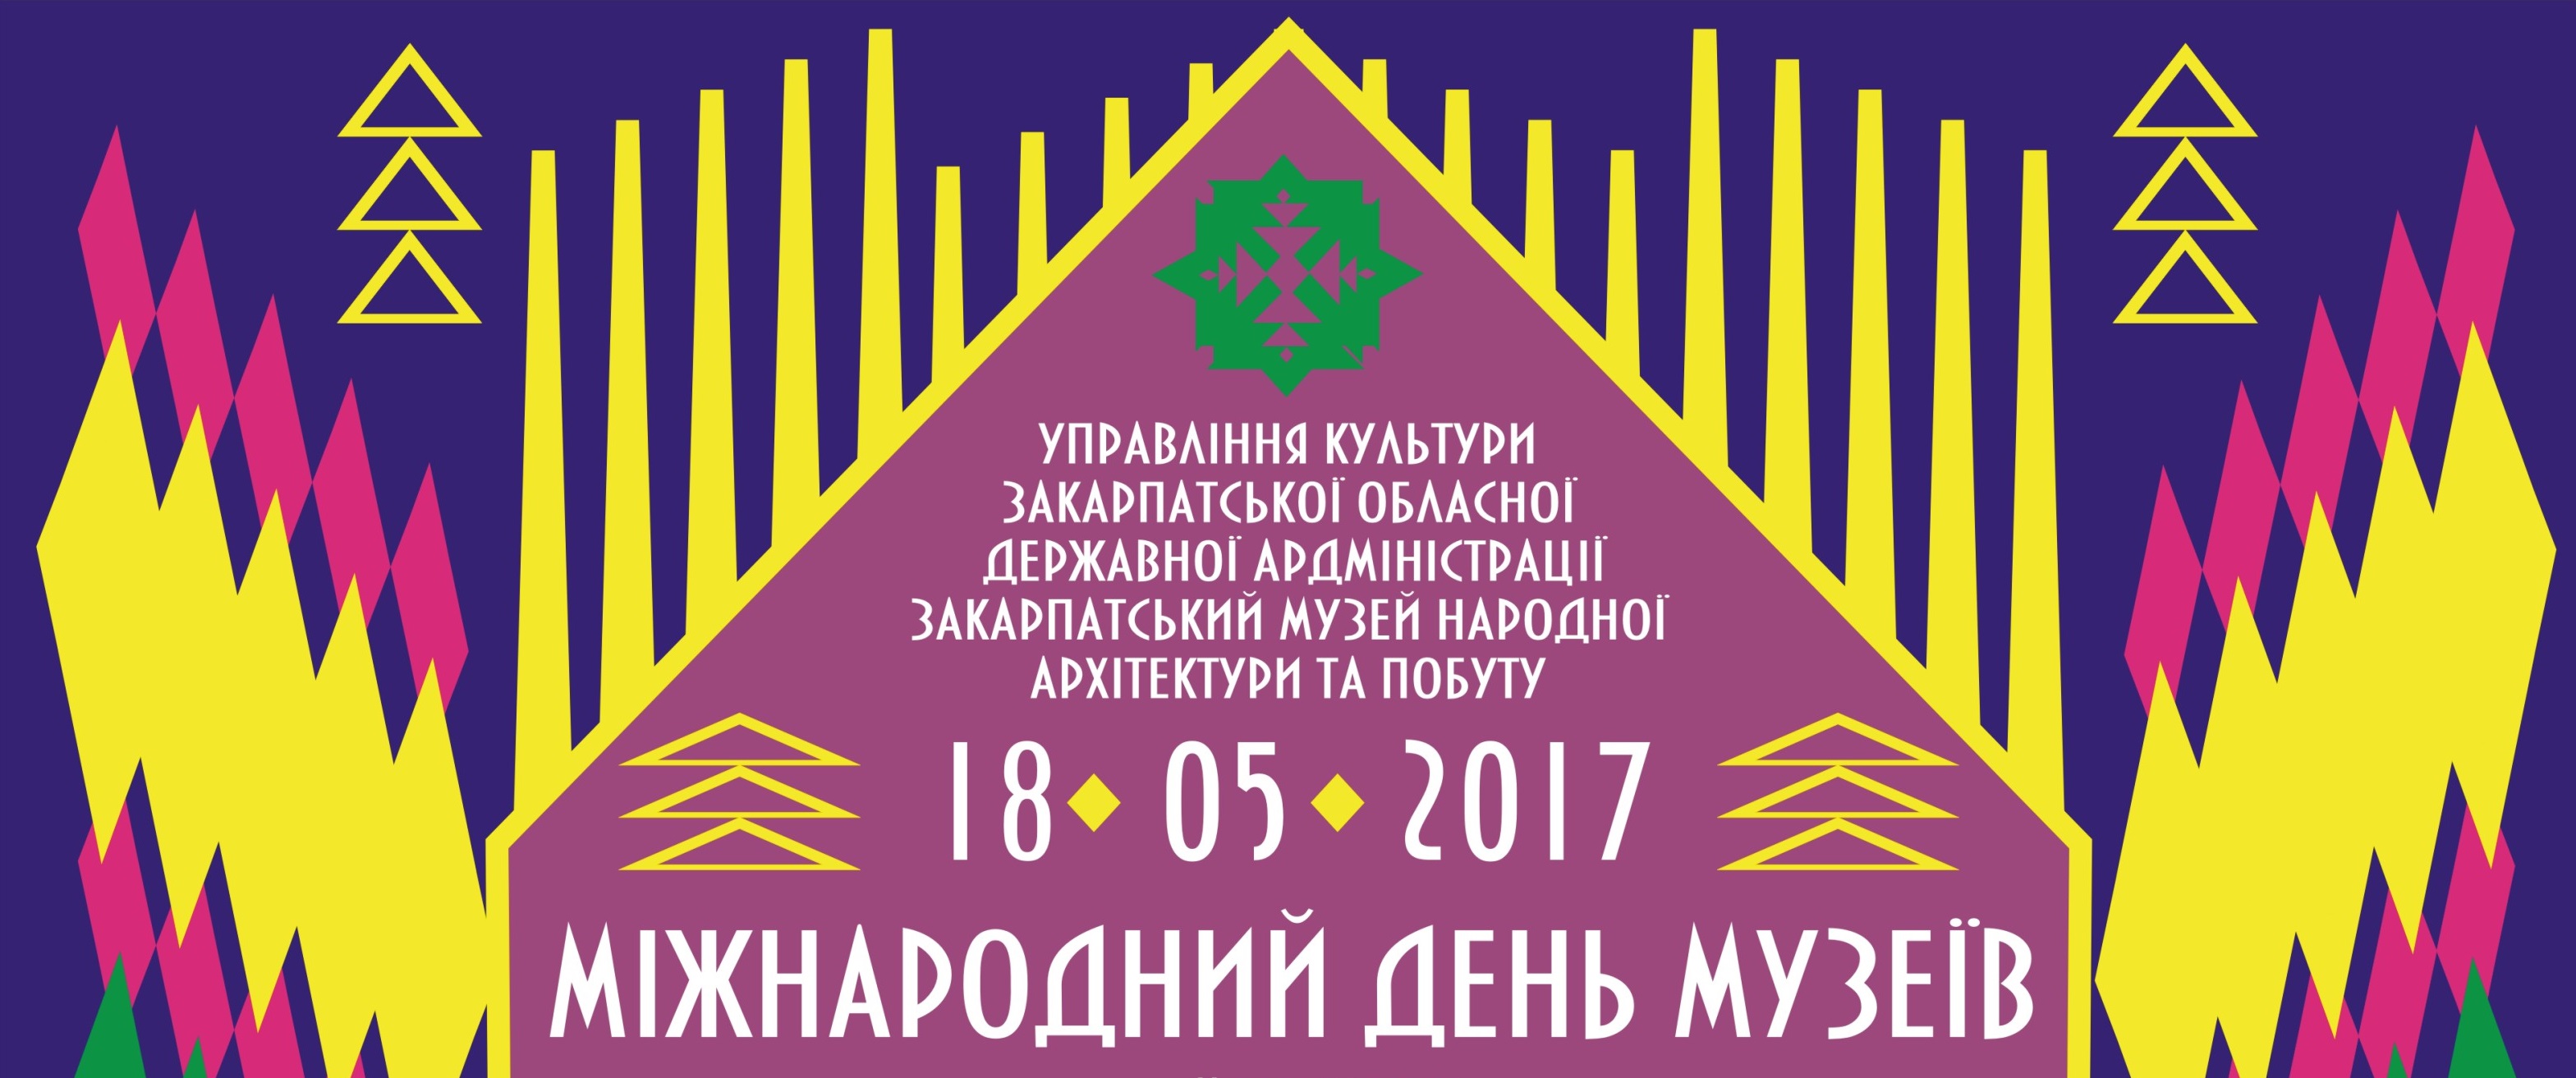 Ужгородський скансен підготував програму до Міжнародного дня музеїв